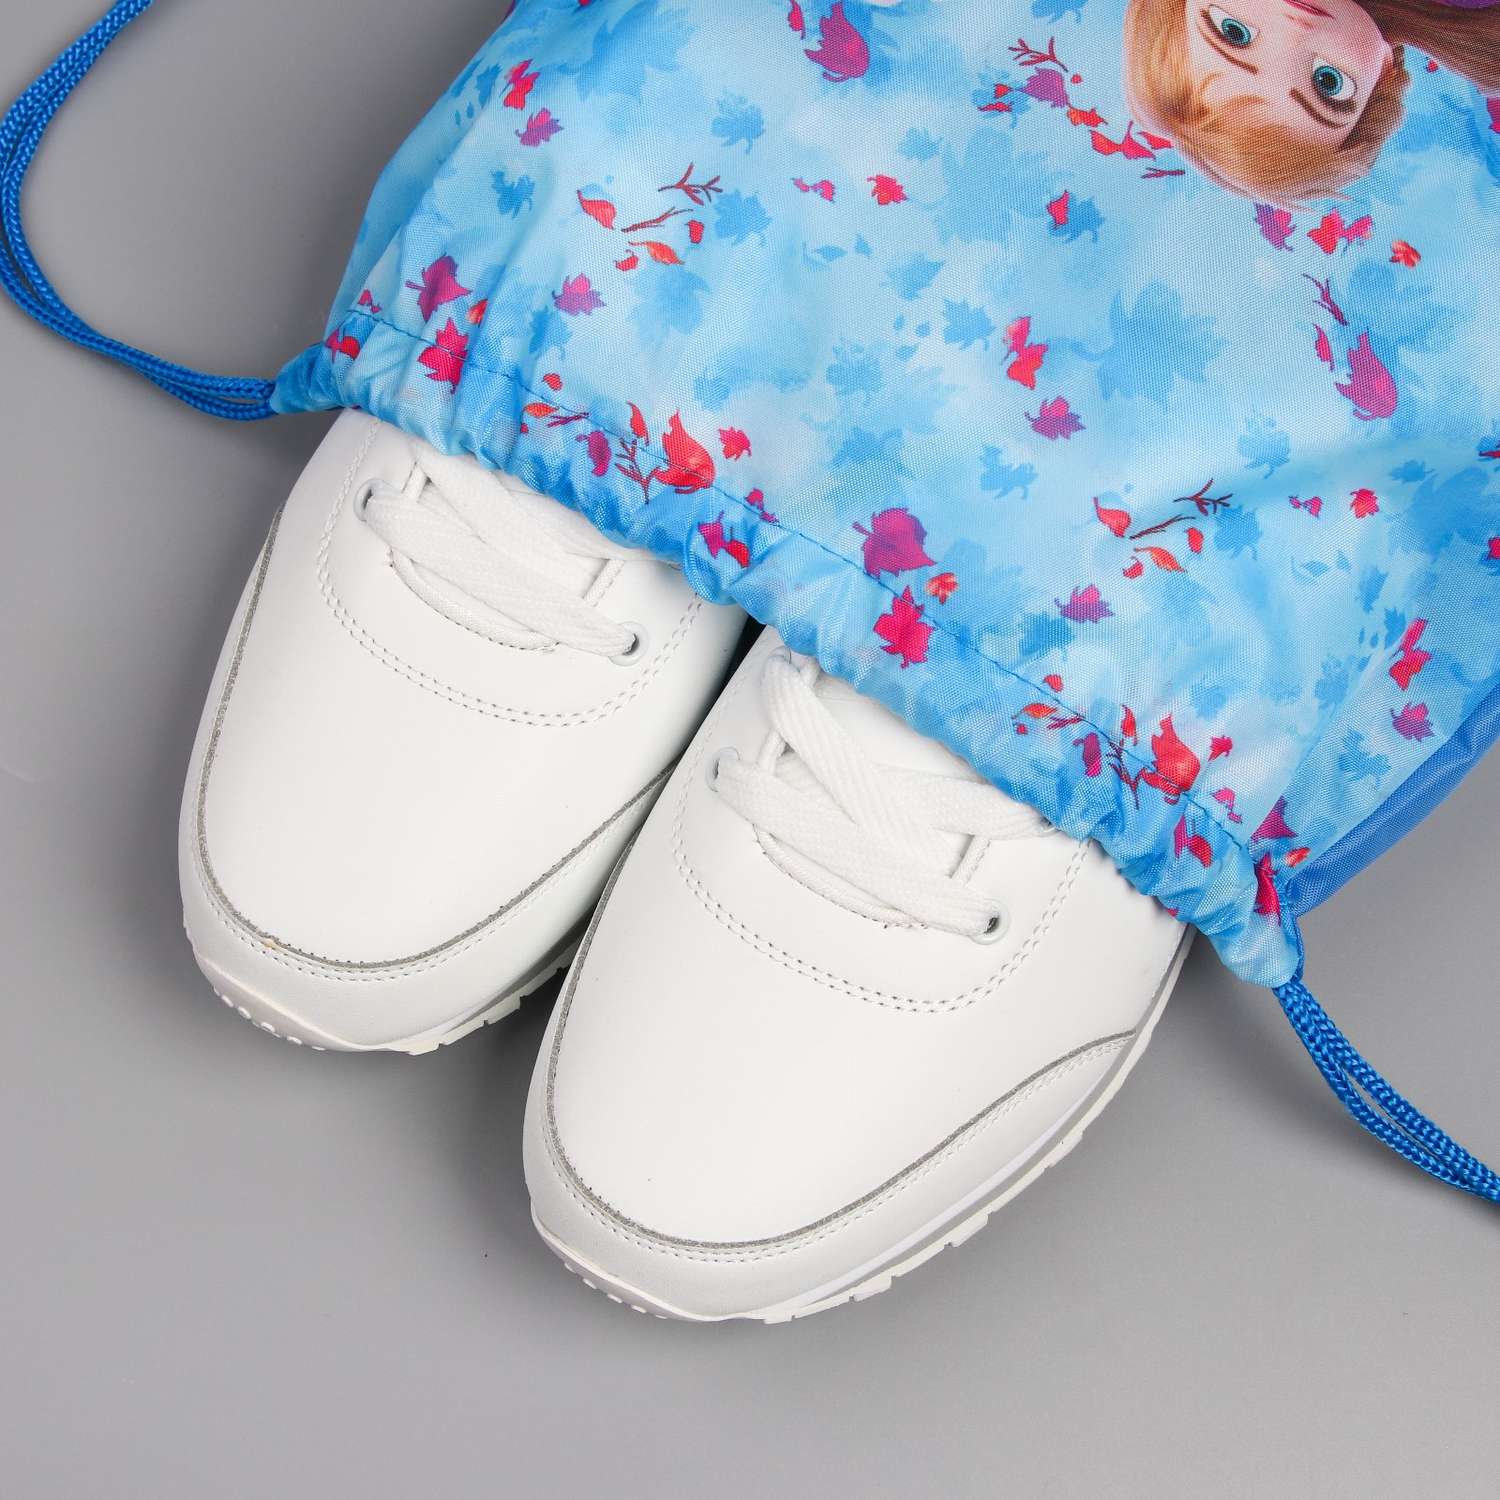 Мешок для обуви Disney Анна и Эльза Холодное сердце - фото 2